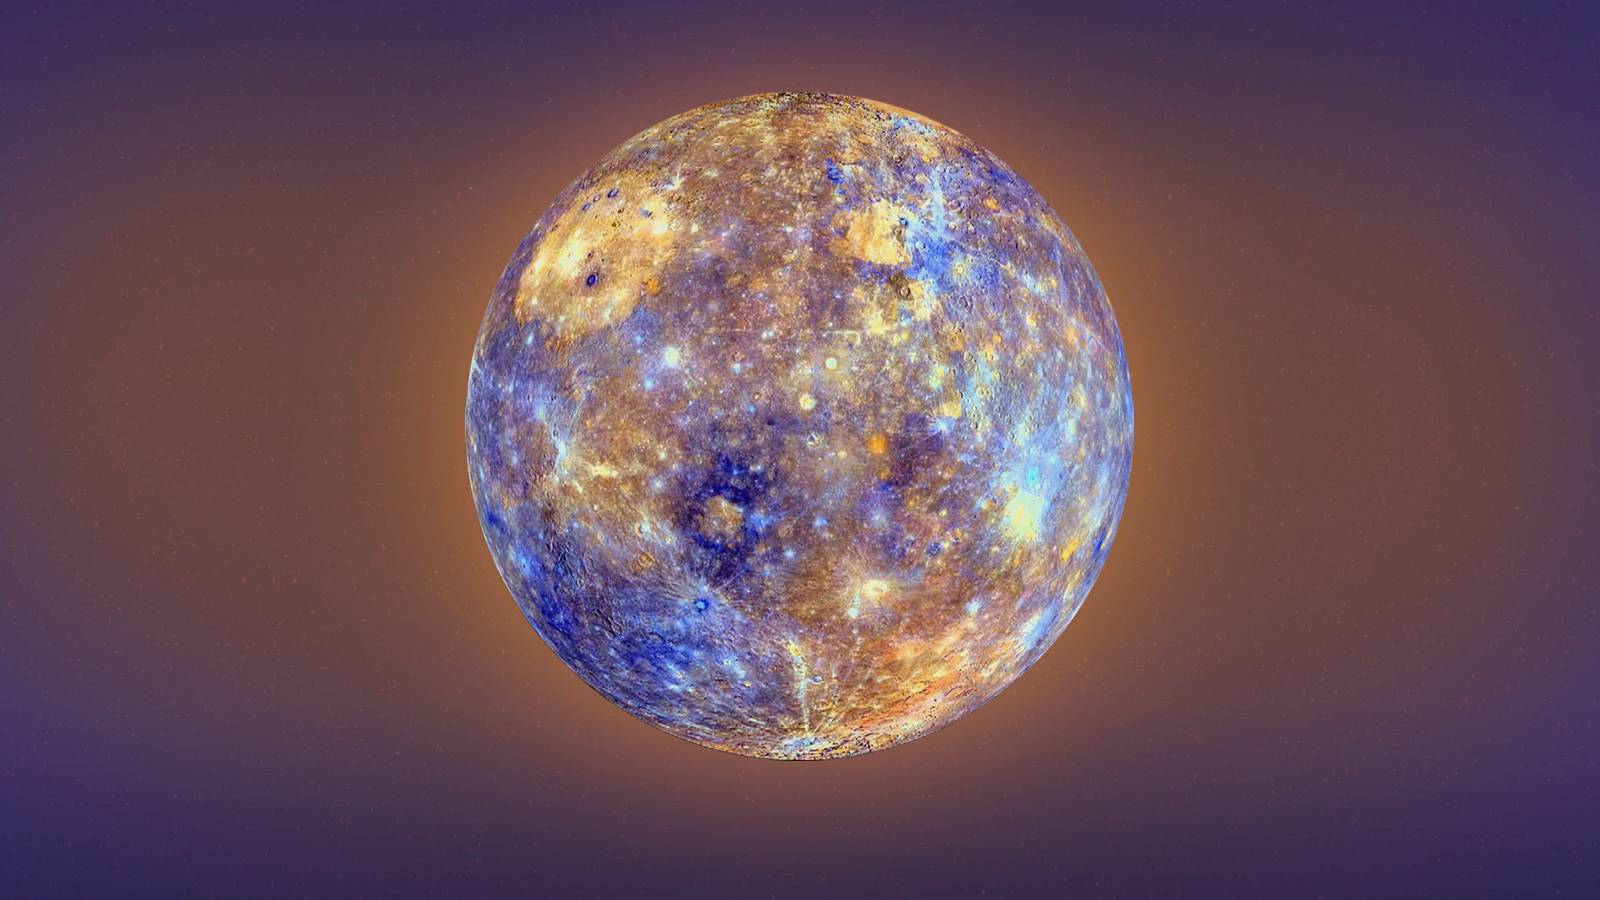 El singular planeta Mercurio